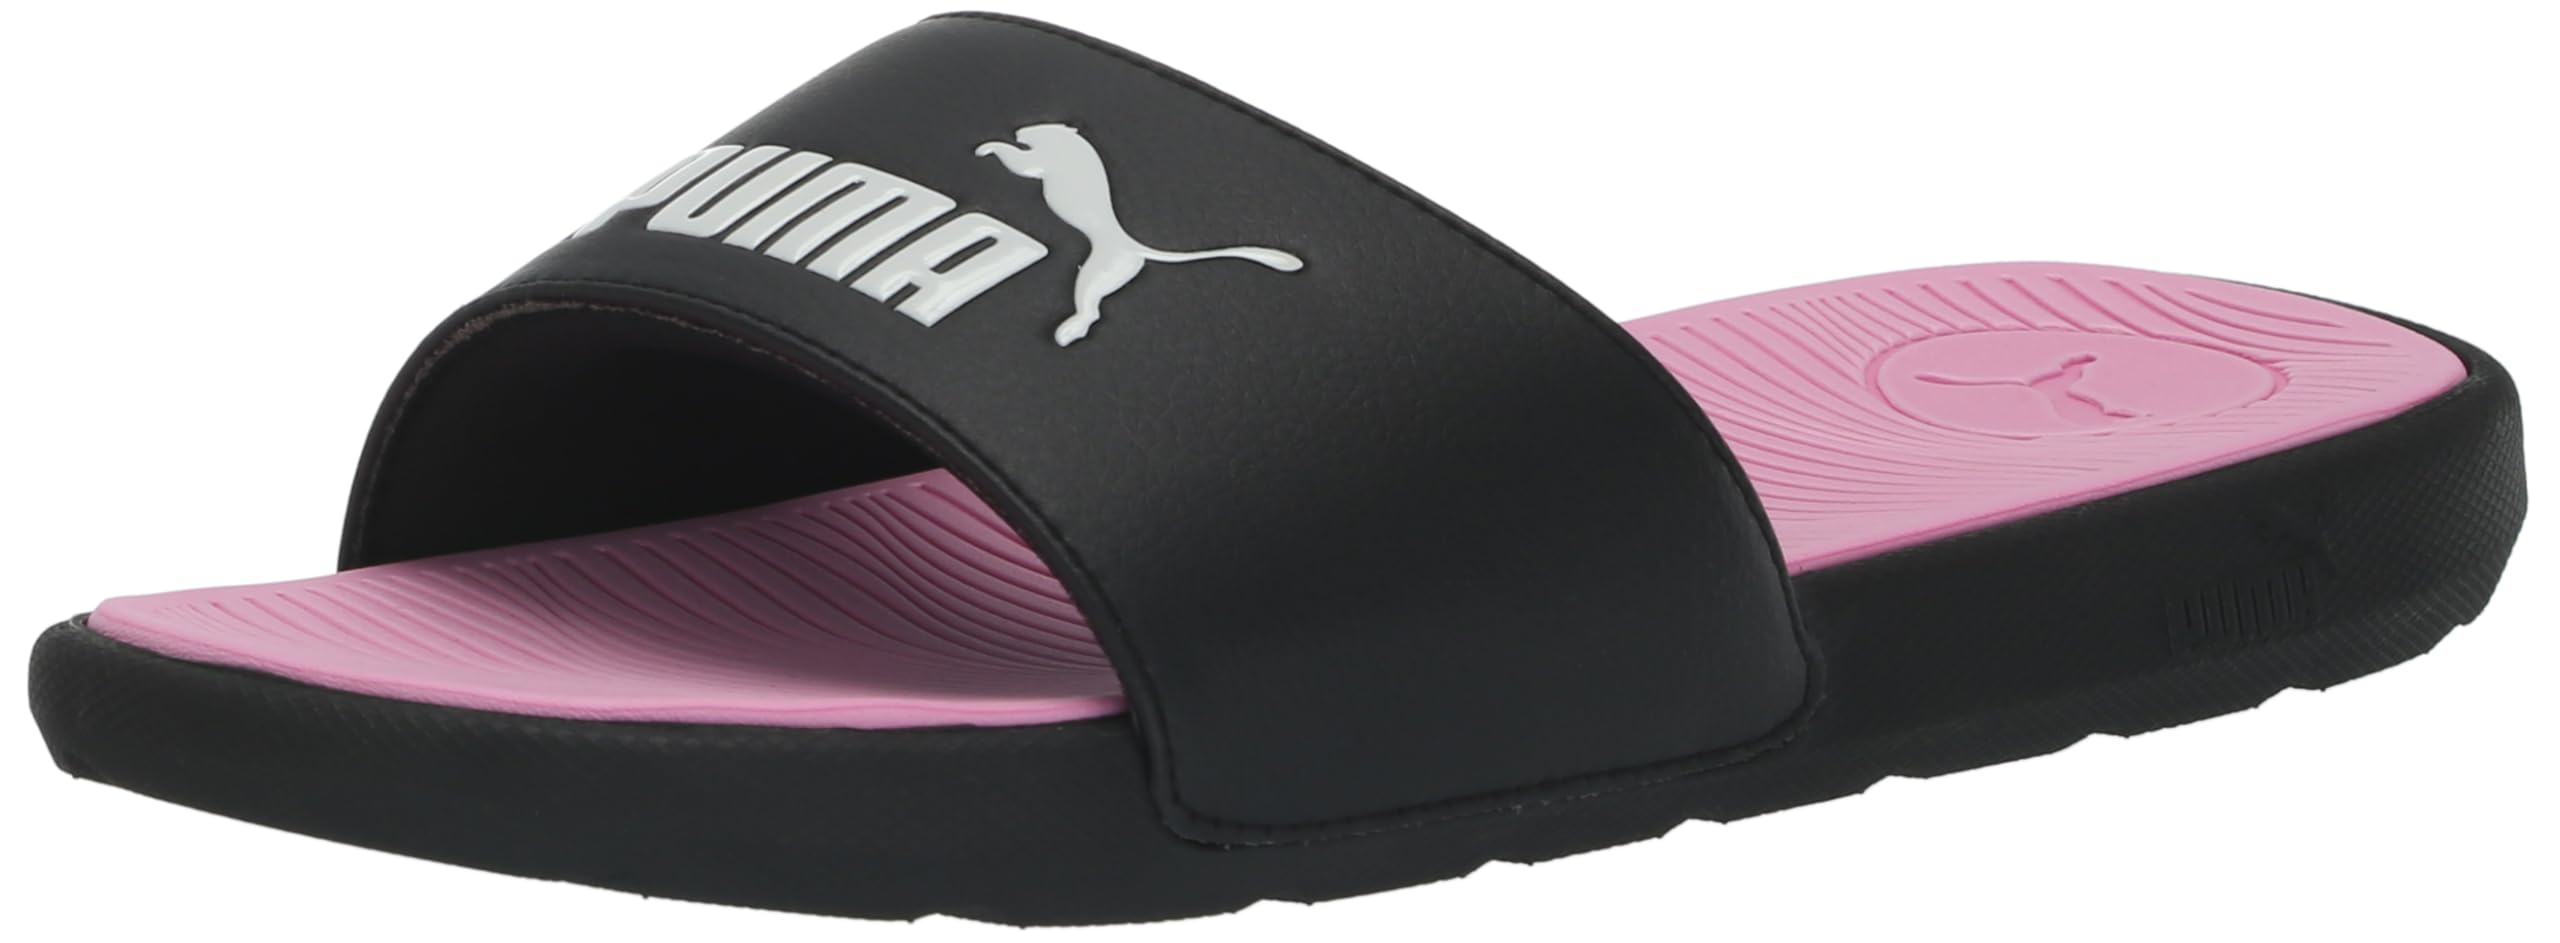 PUMA Women's Cool Cat 2.0 Slide Sandal